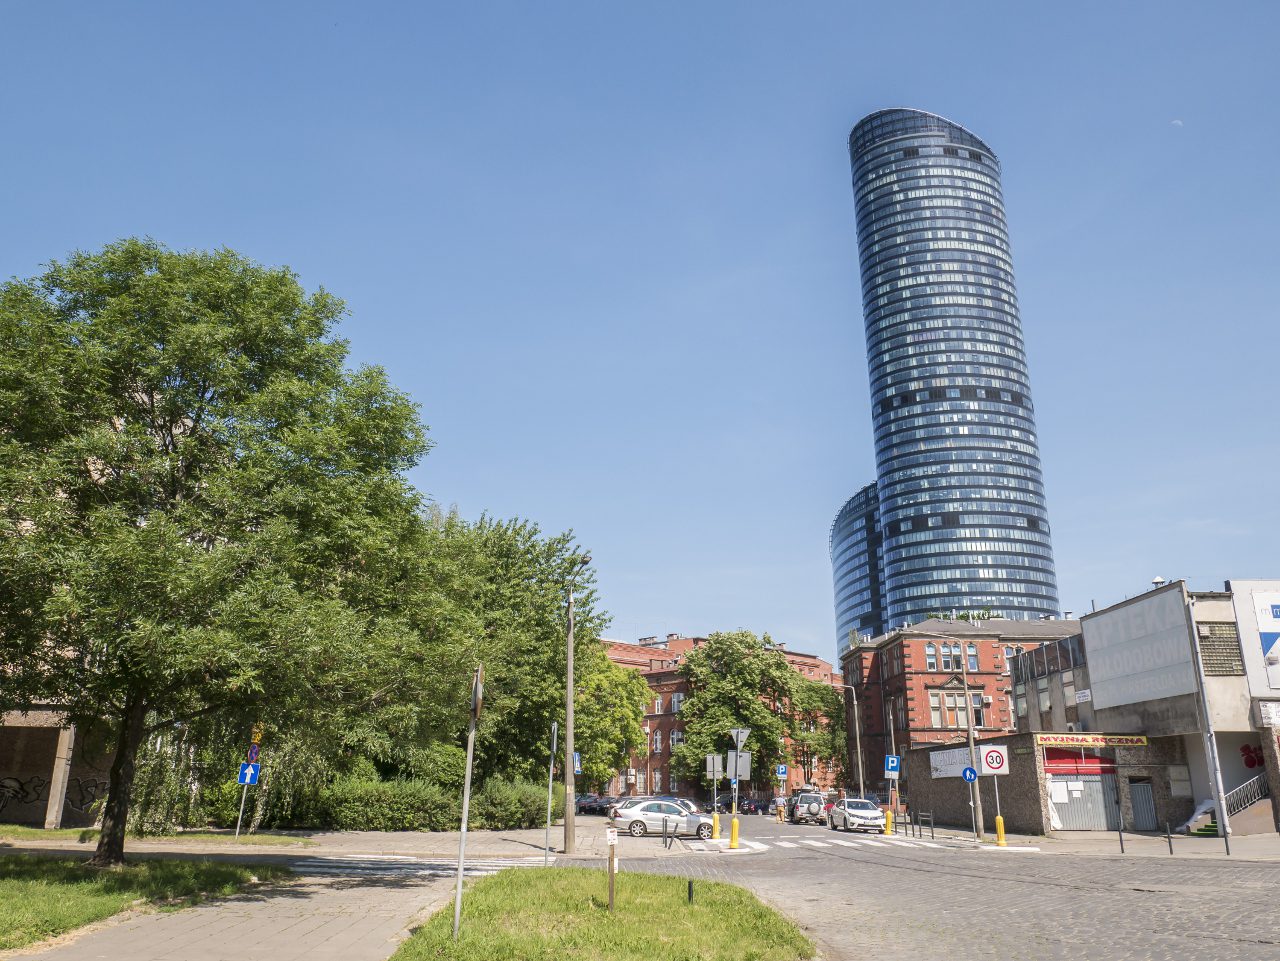 Wrocław sky tower